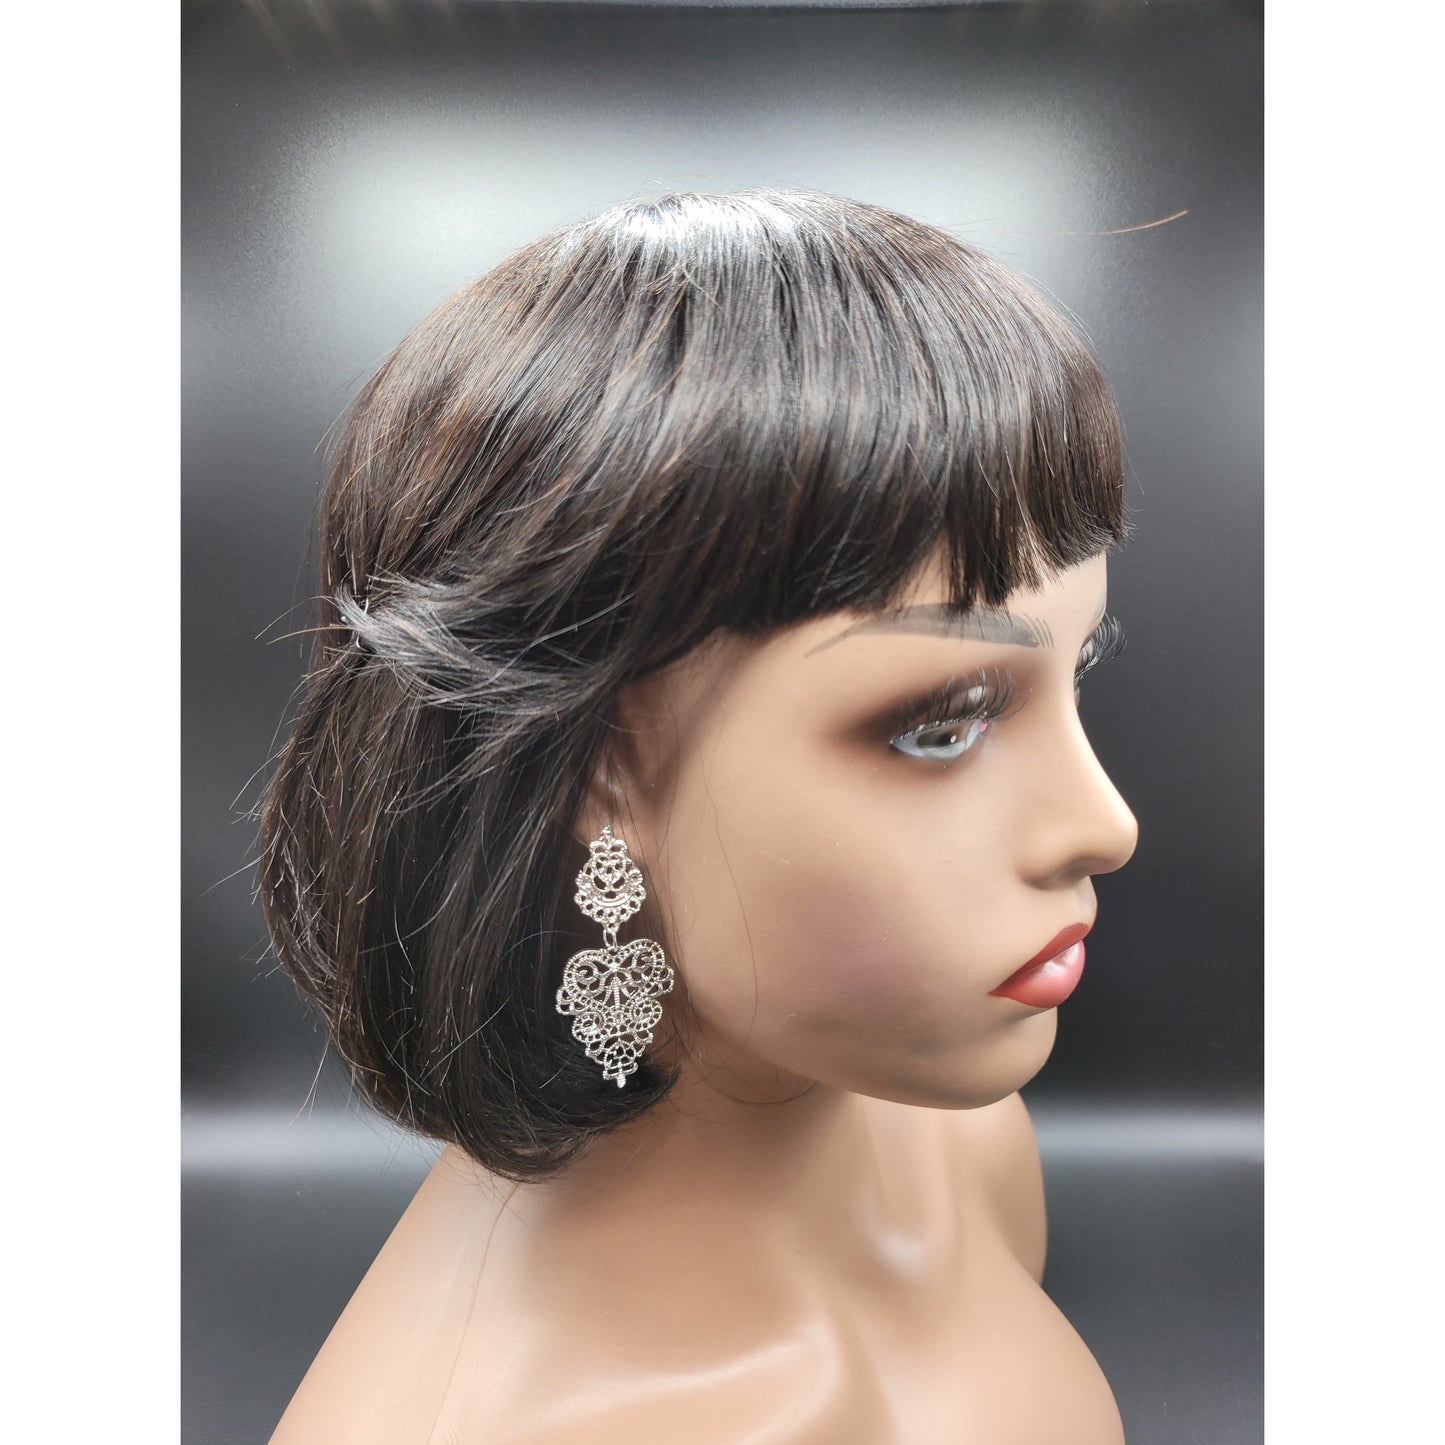 Victorian classy earrings